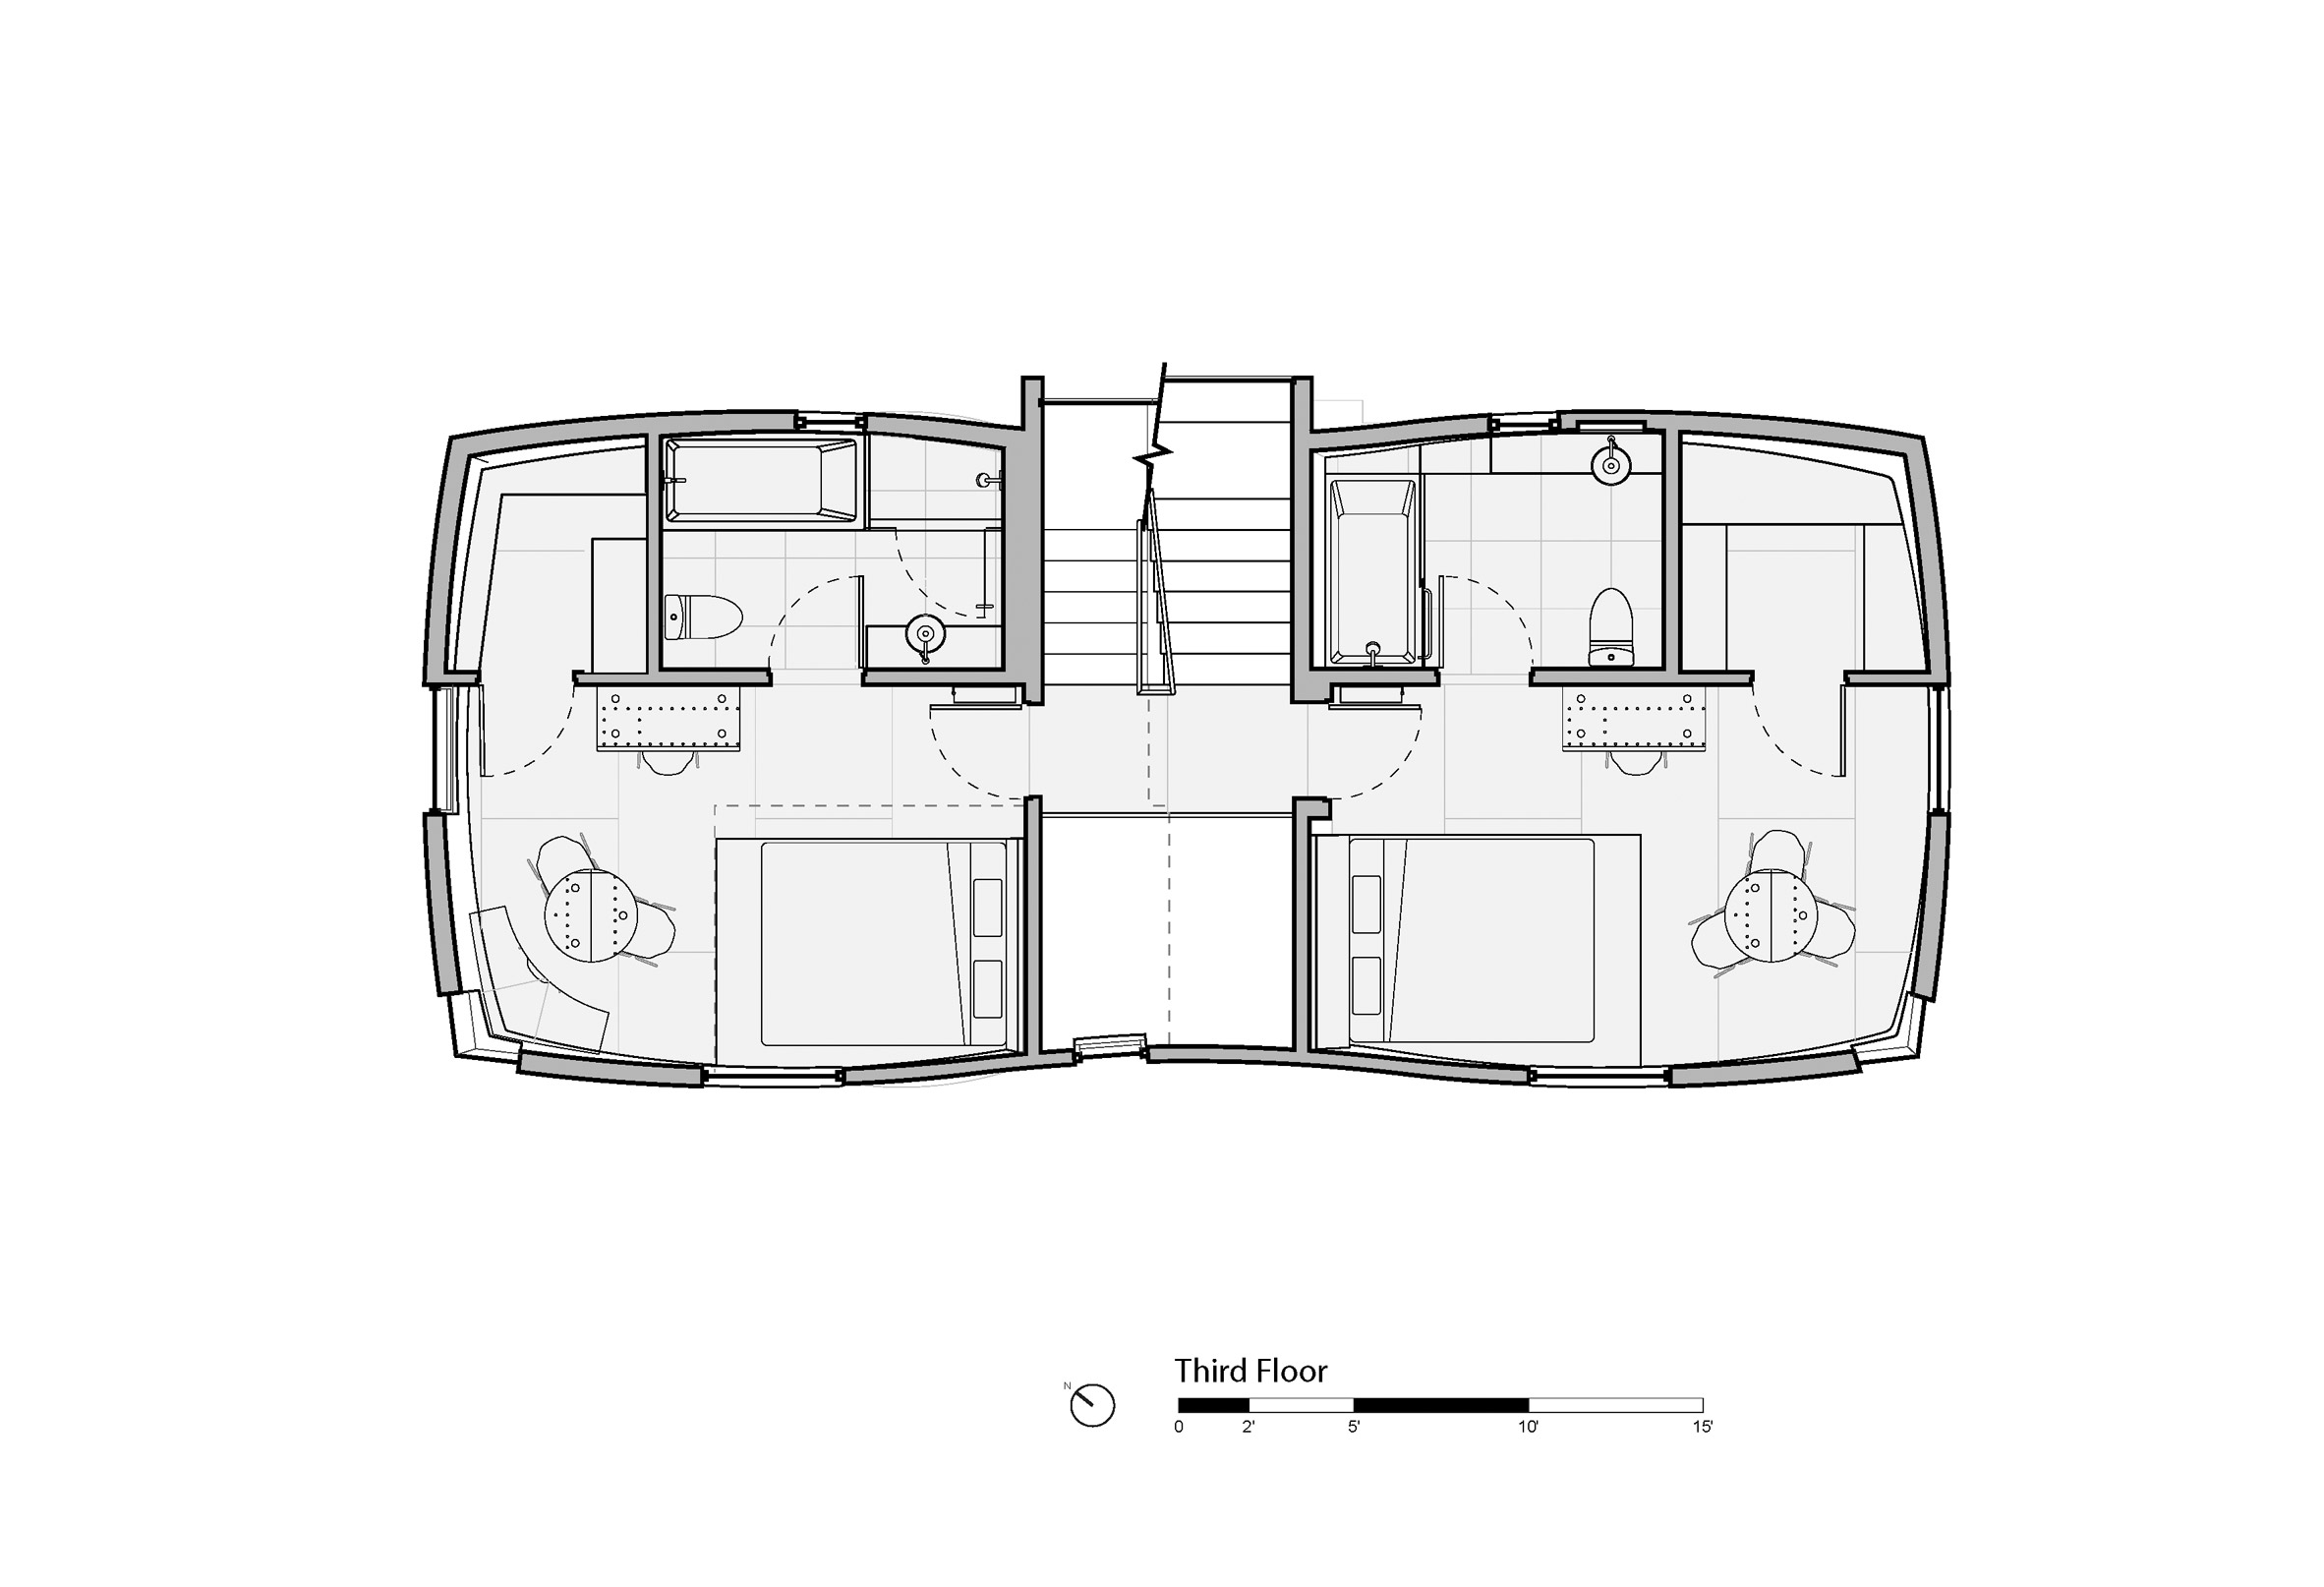 The second-floor plan